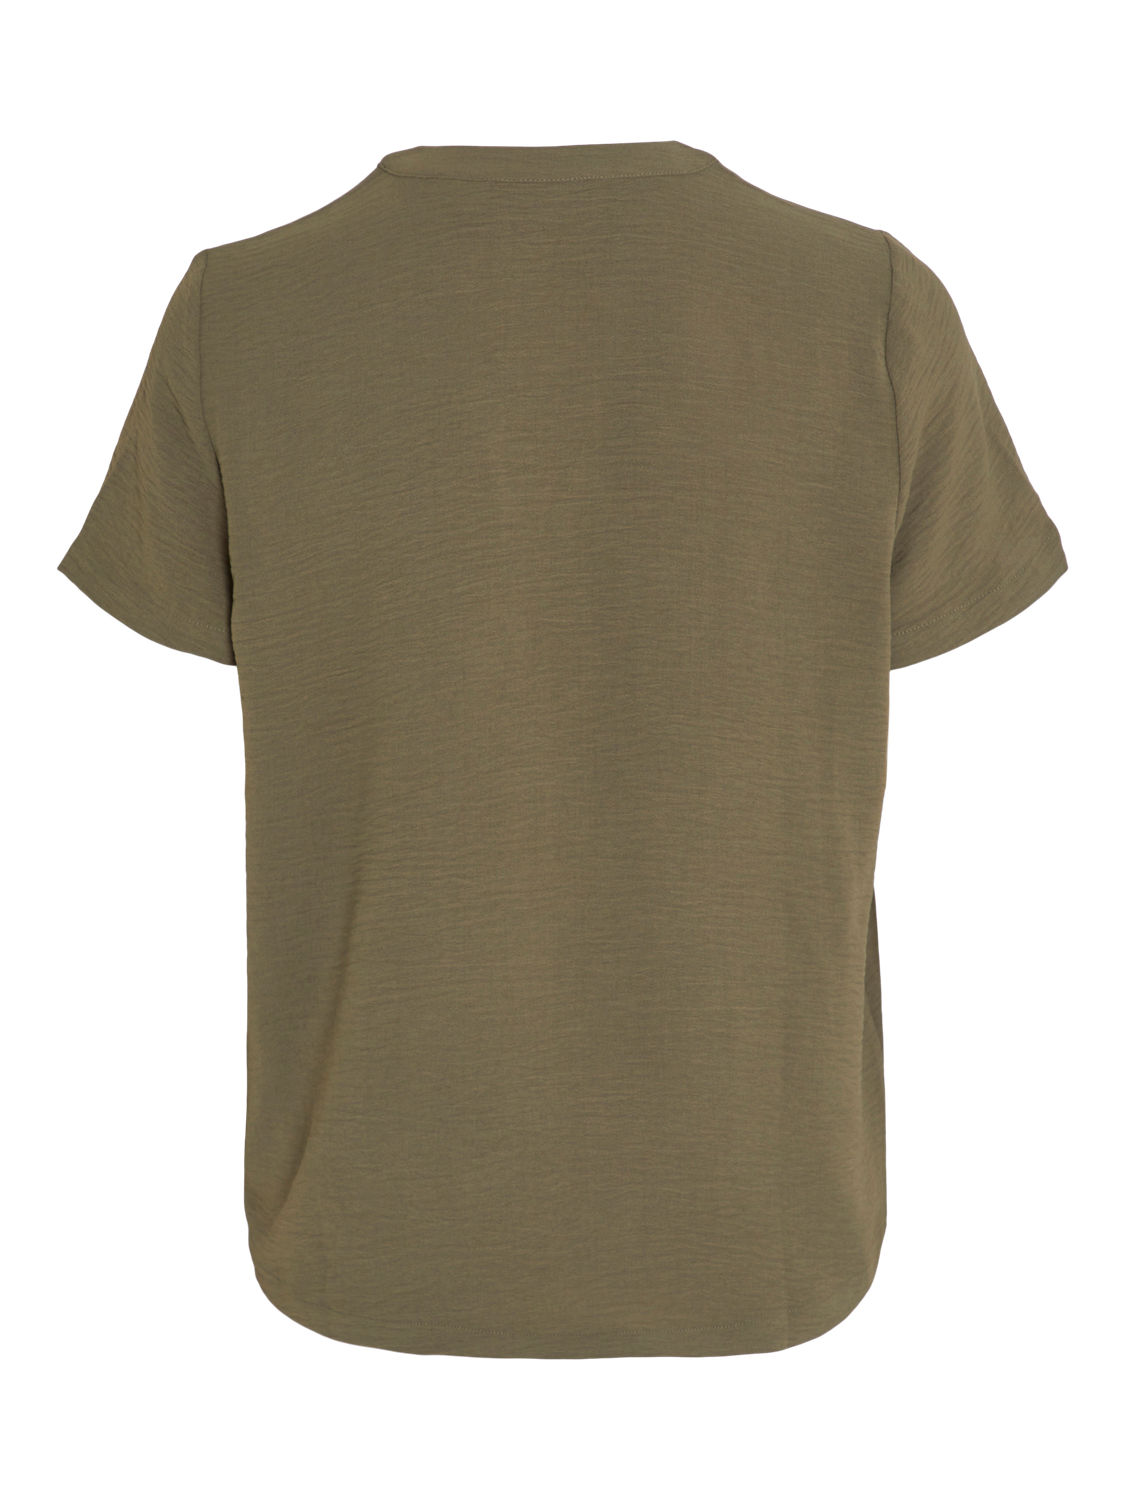 VIJANKO T-Shirts & Tops - Dusty Olive